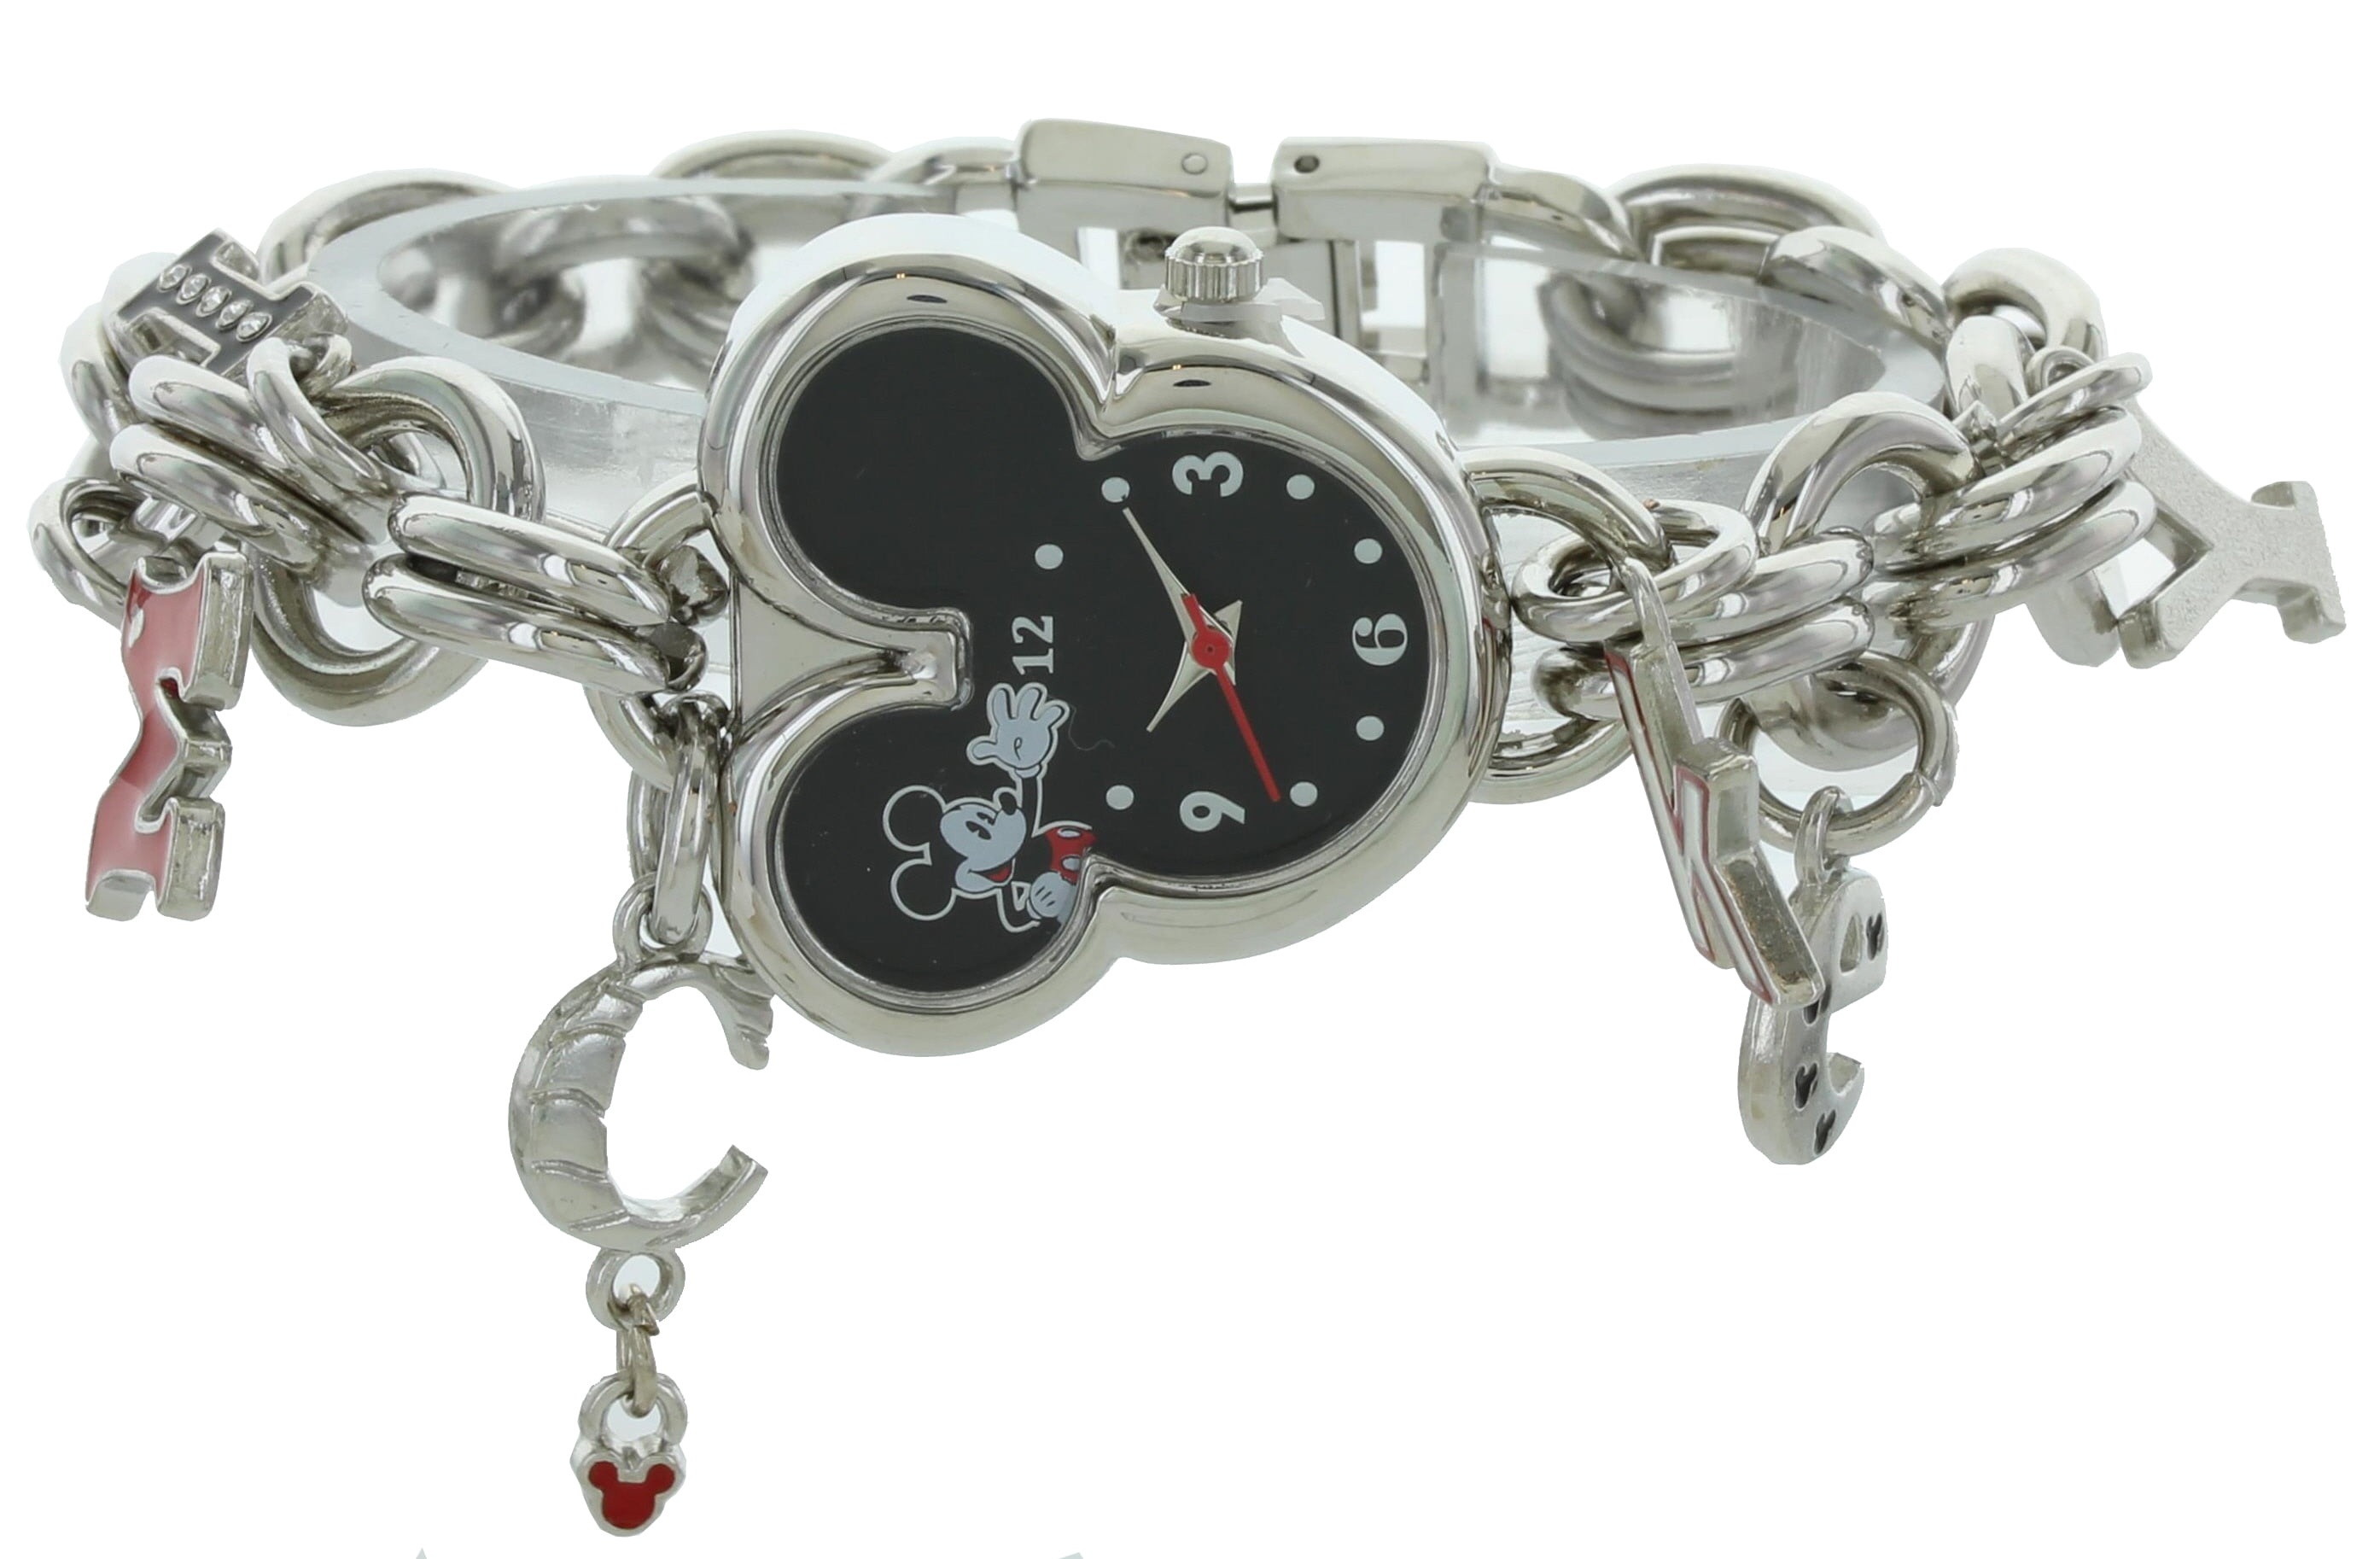 Anne Klein Ladies Charm Bracelet Watch 10-8096RMCH – Watches of America